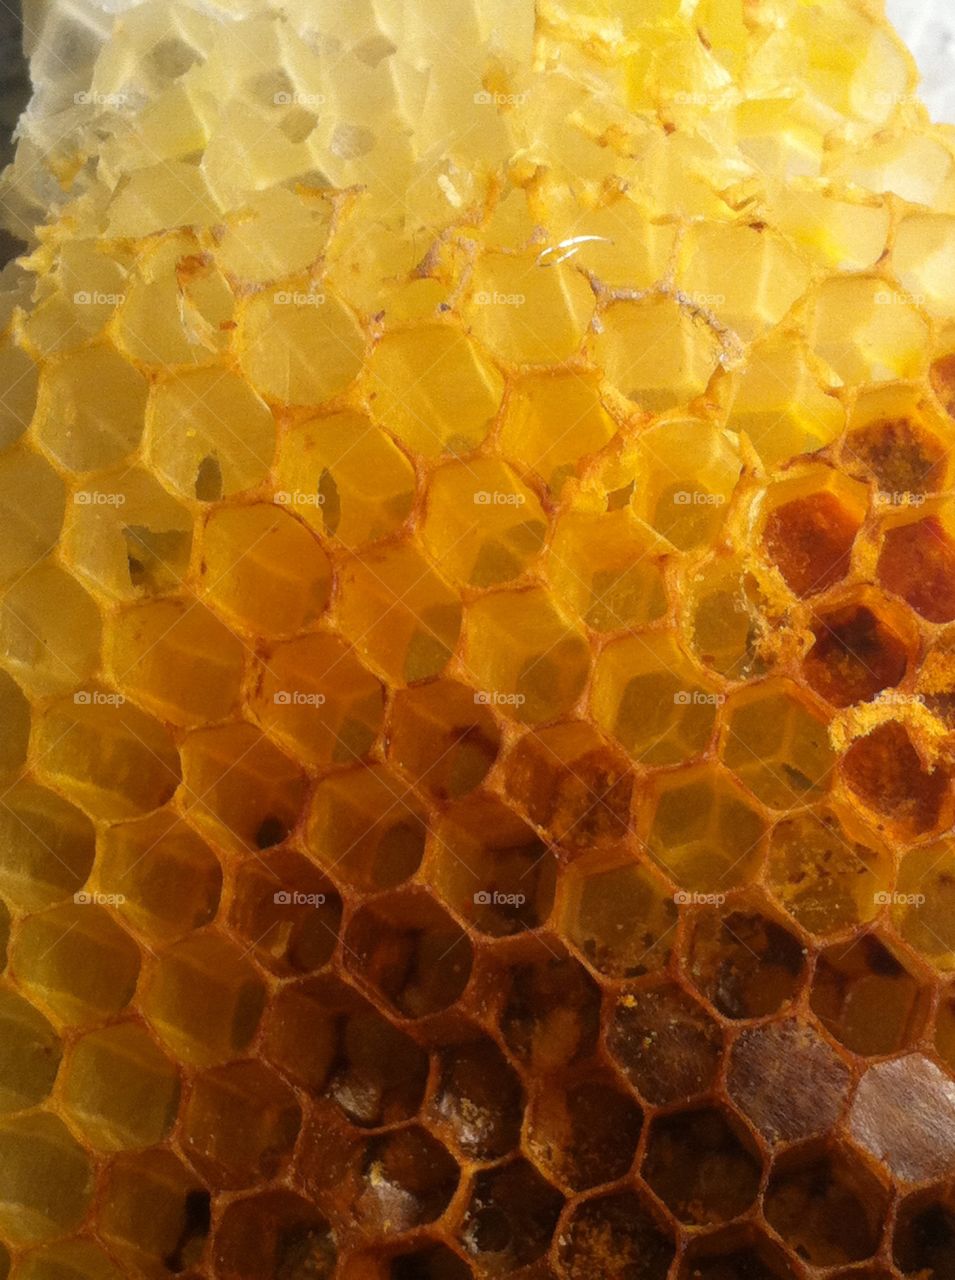 Bee honey comb